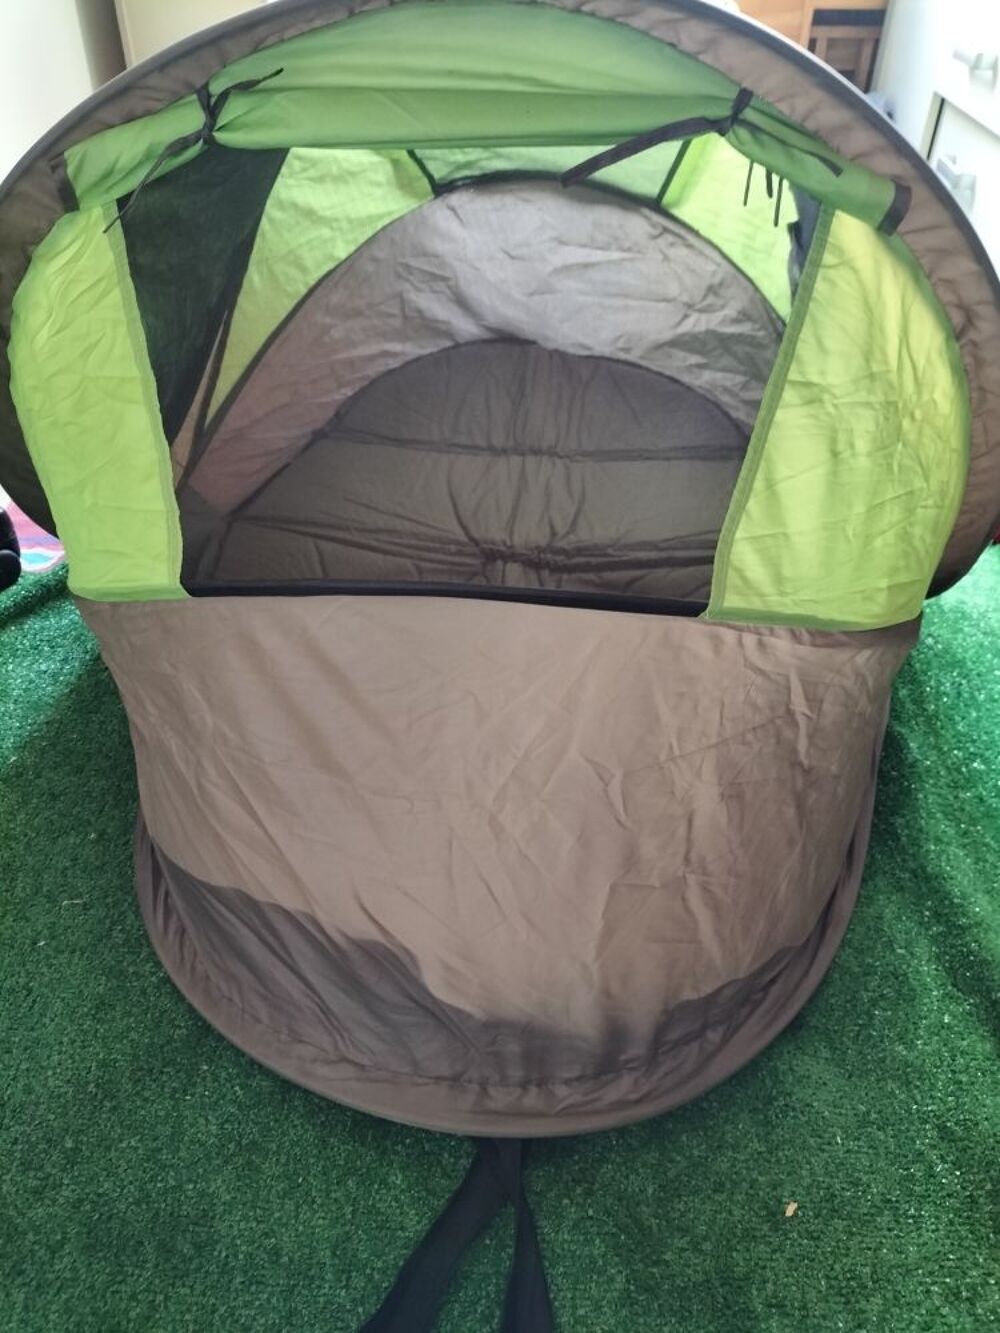 lit tente anti UV avec moustiquaire Mobilier enfants